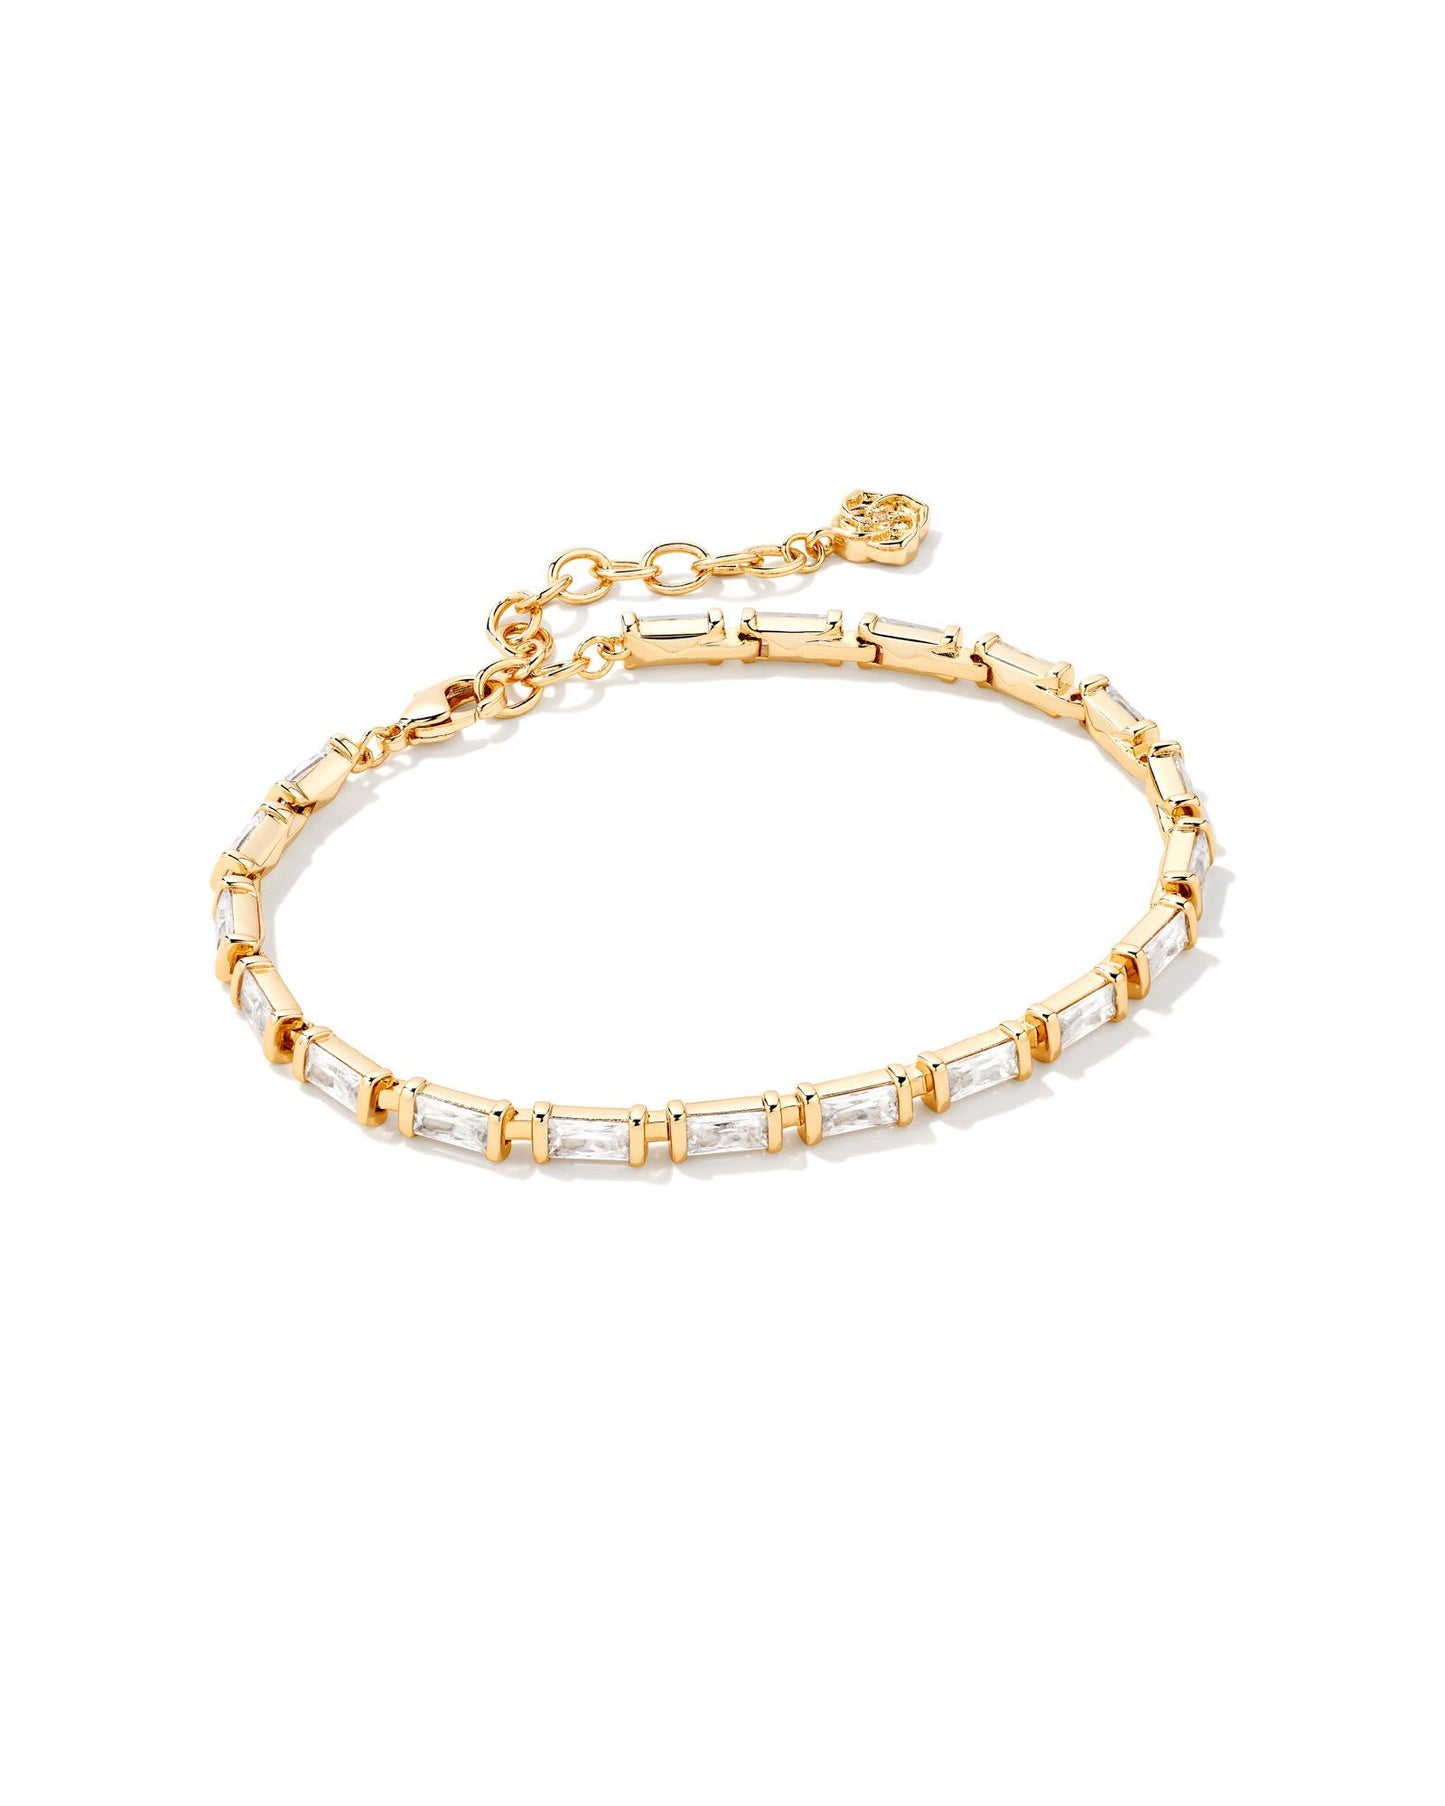 Juliette Delicate Chain Bracelet